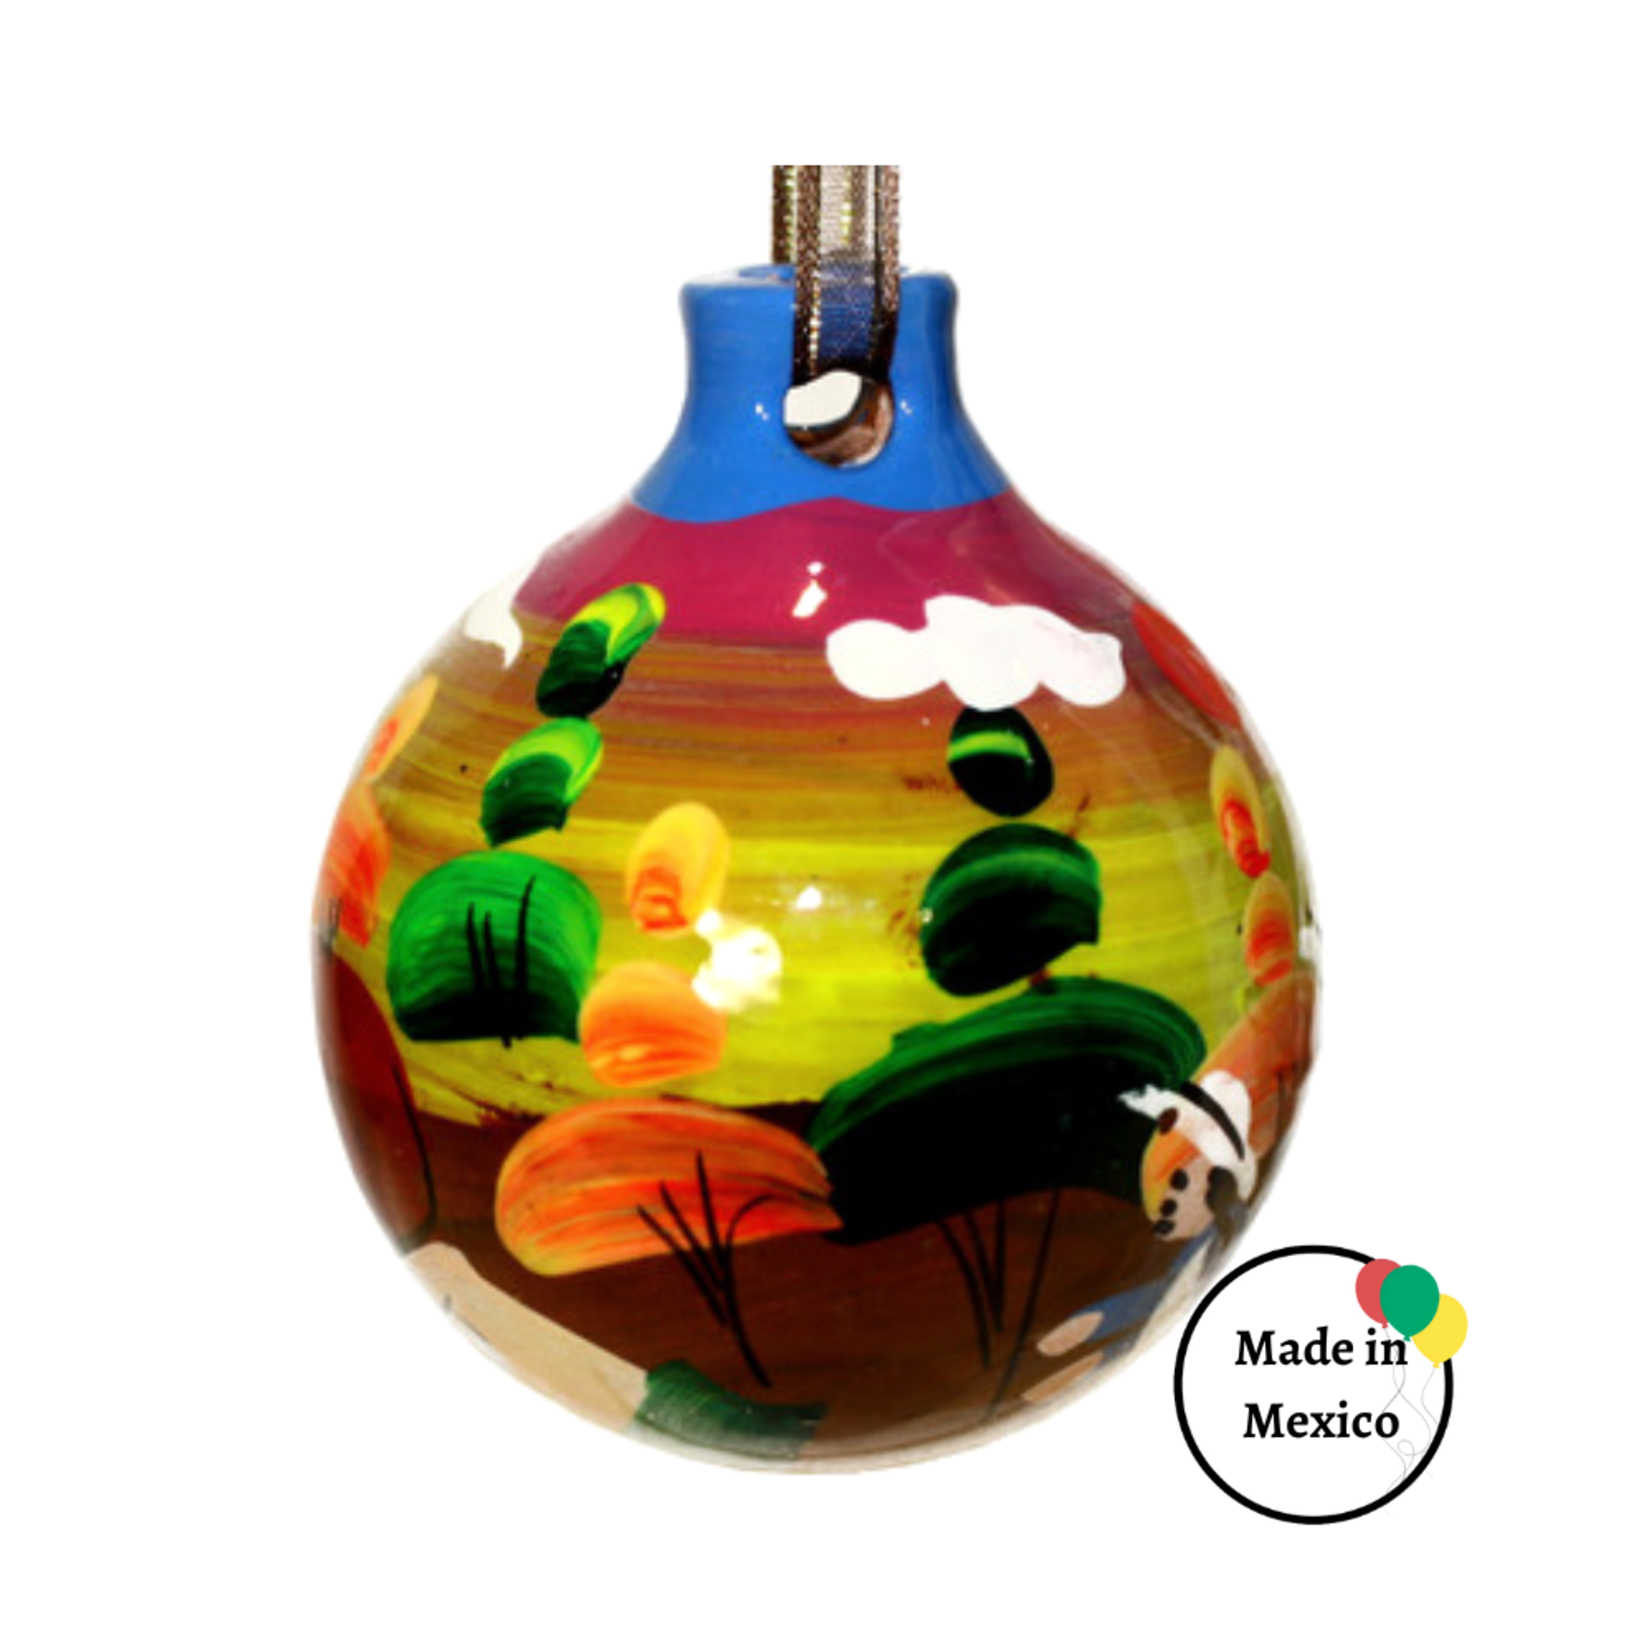 Esfera De Barro - Hand Painted Clay Mexican Christmas Ornament